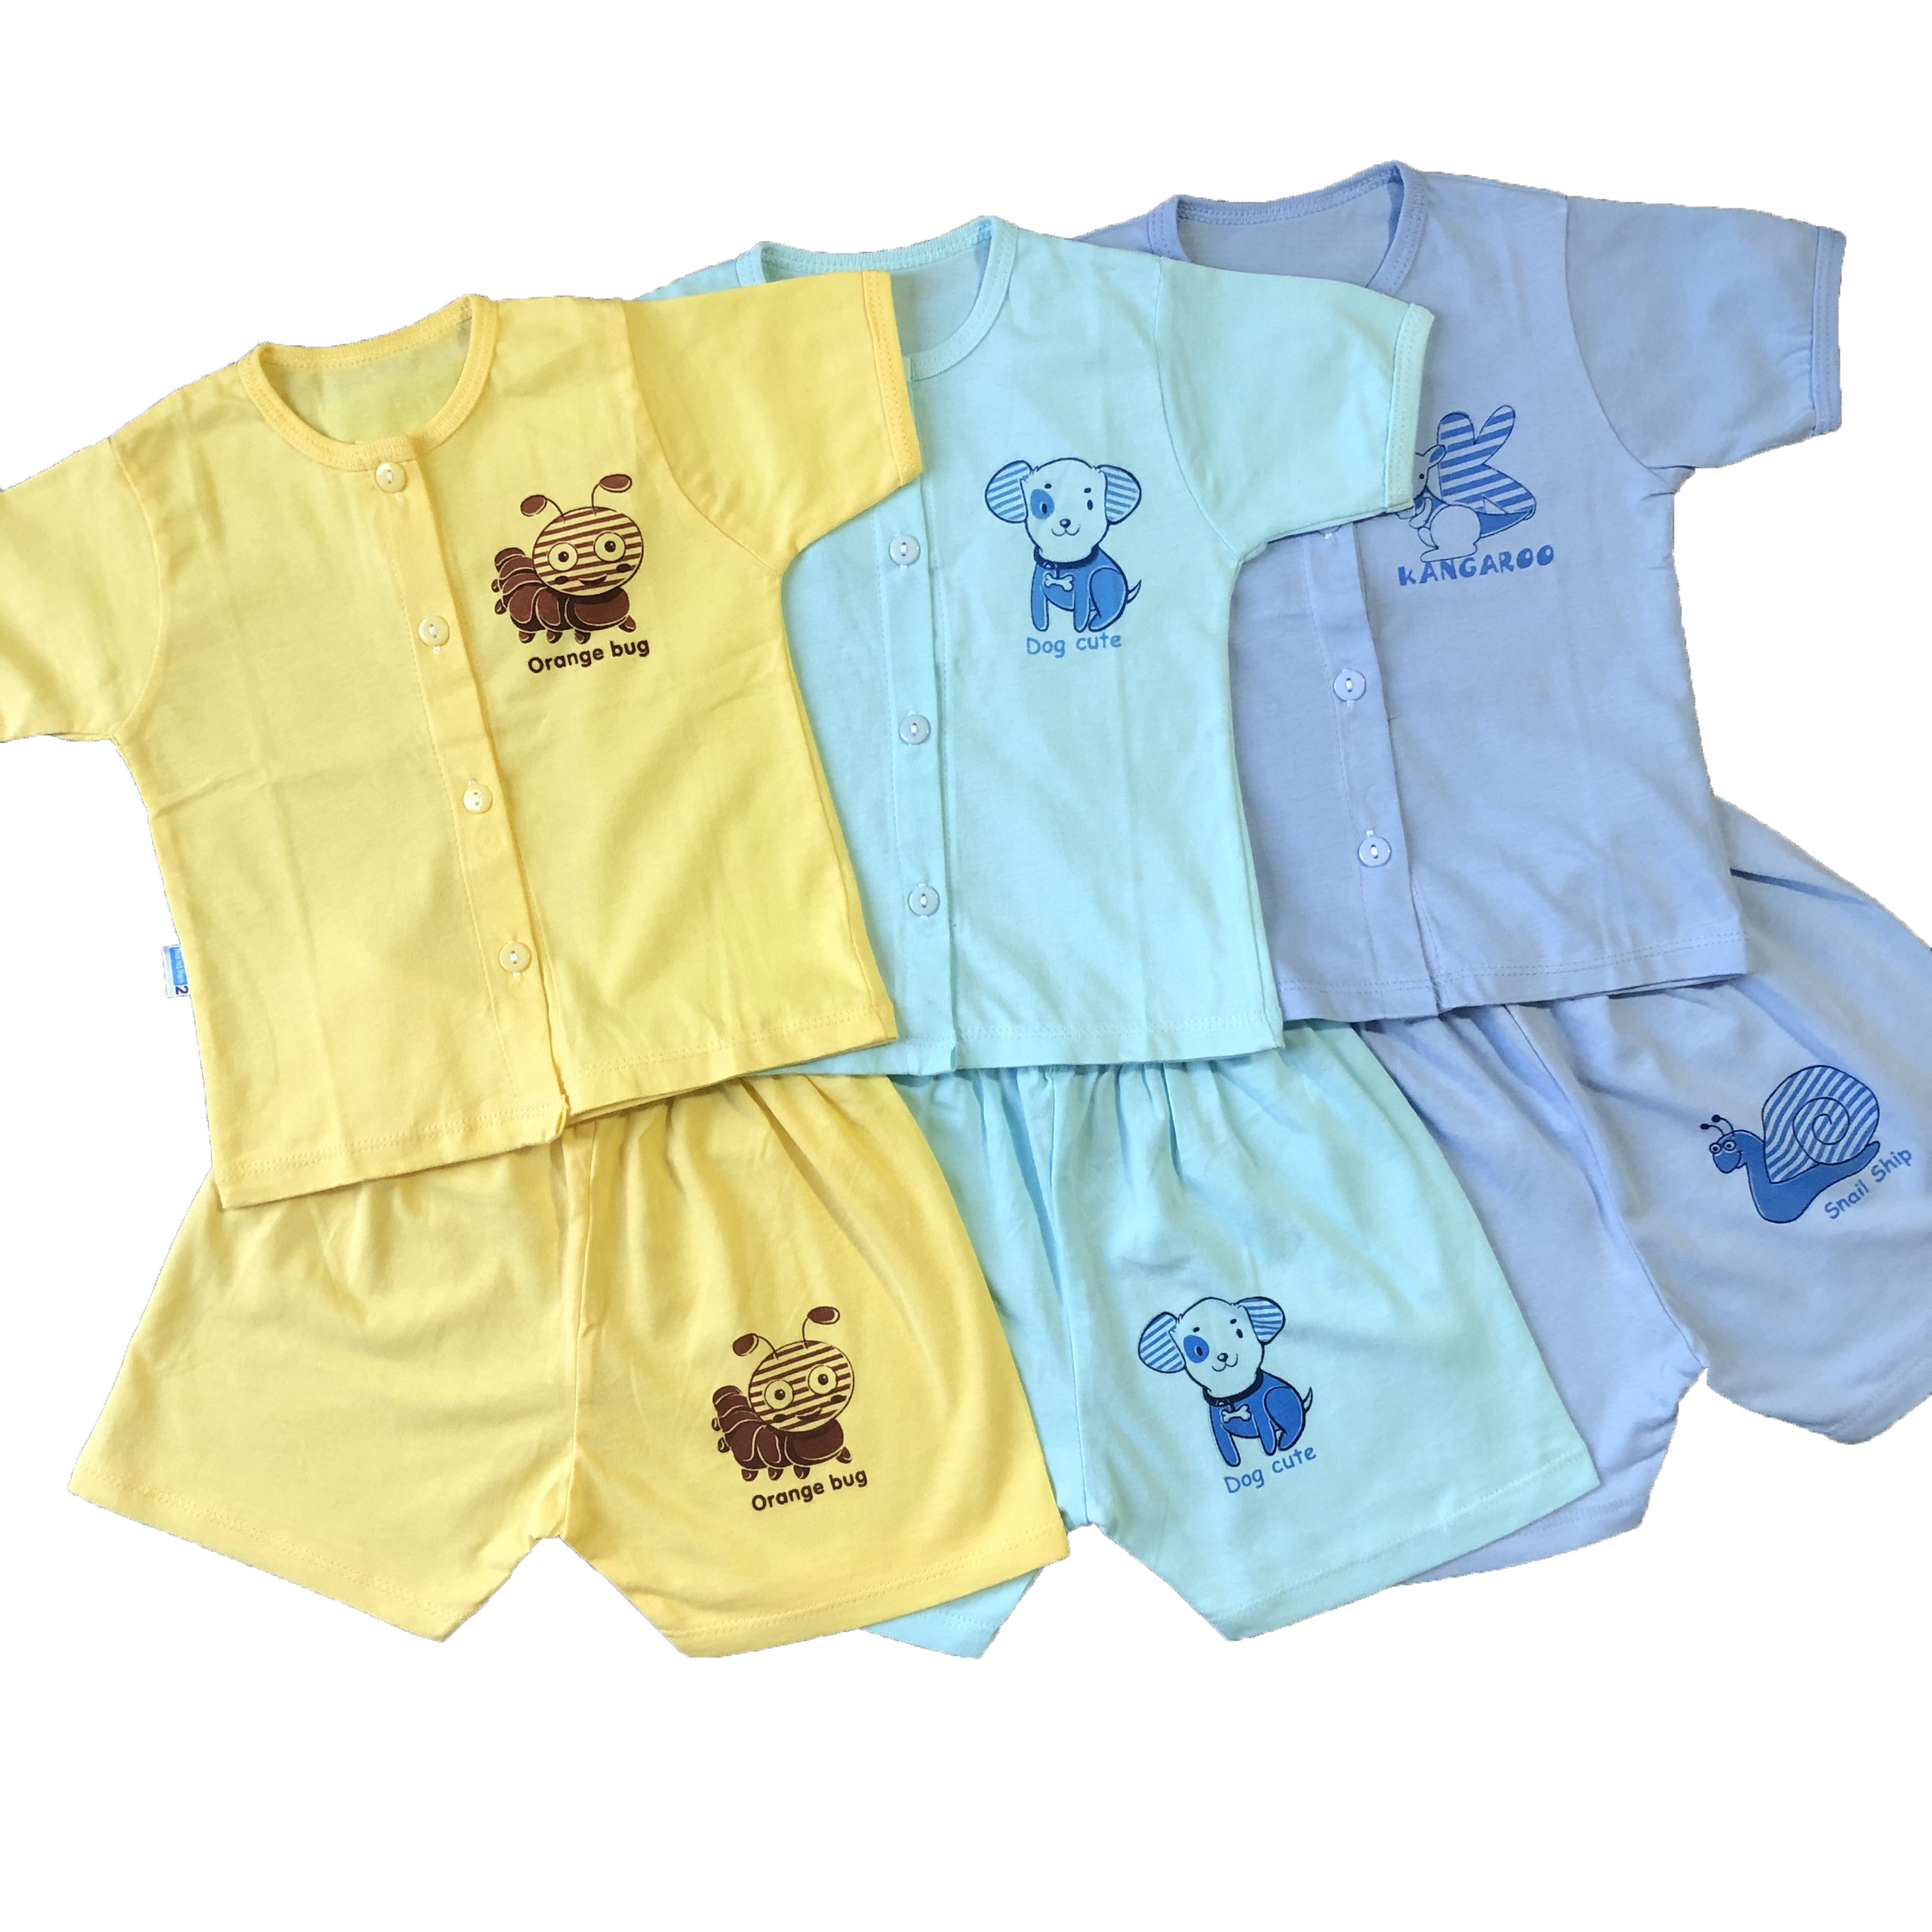 Combo 3 Bộ quần áo sơ sinh cotton Thái Hà Thịnh - Mẫu Áo Tay Ngắn Cài Giữa - Size 1-5 cho bé sơ sinh -12kg